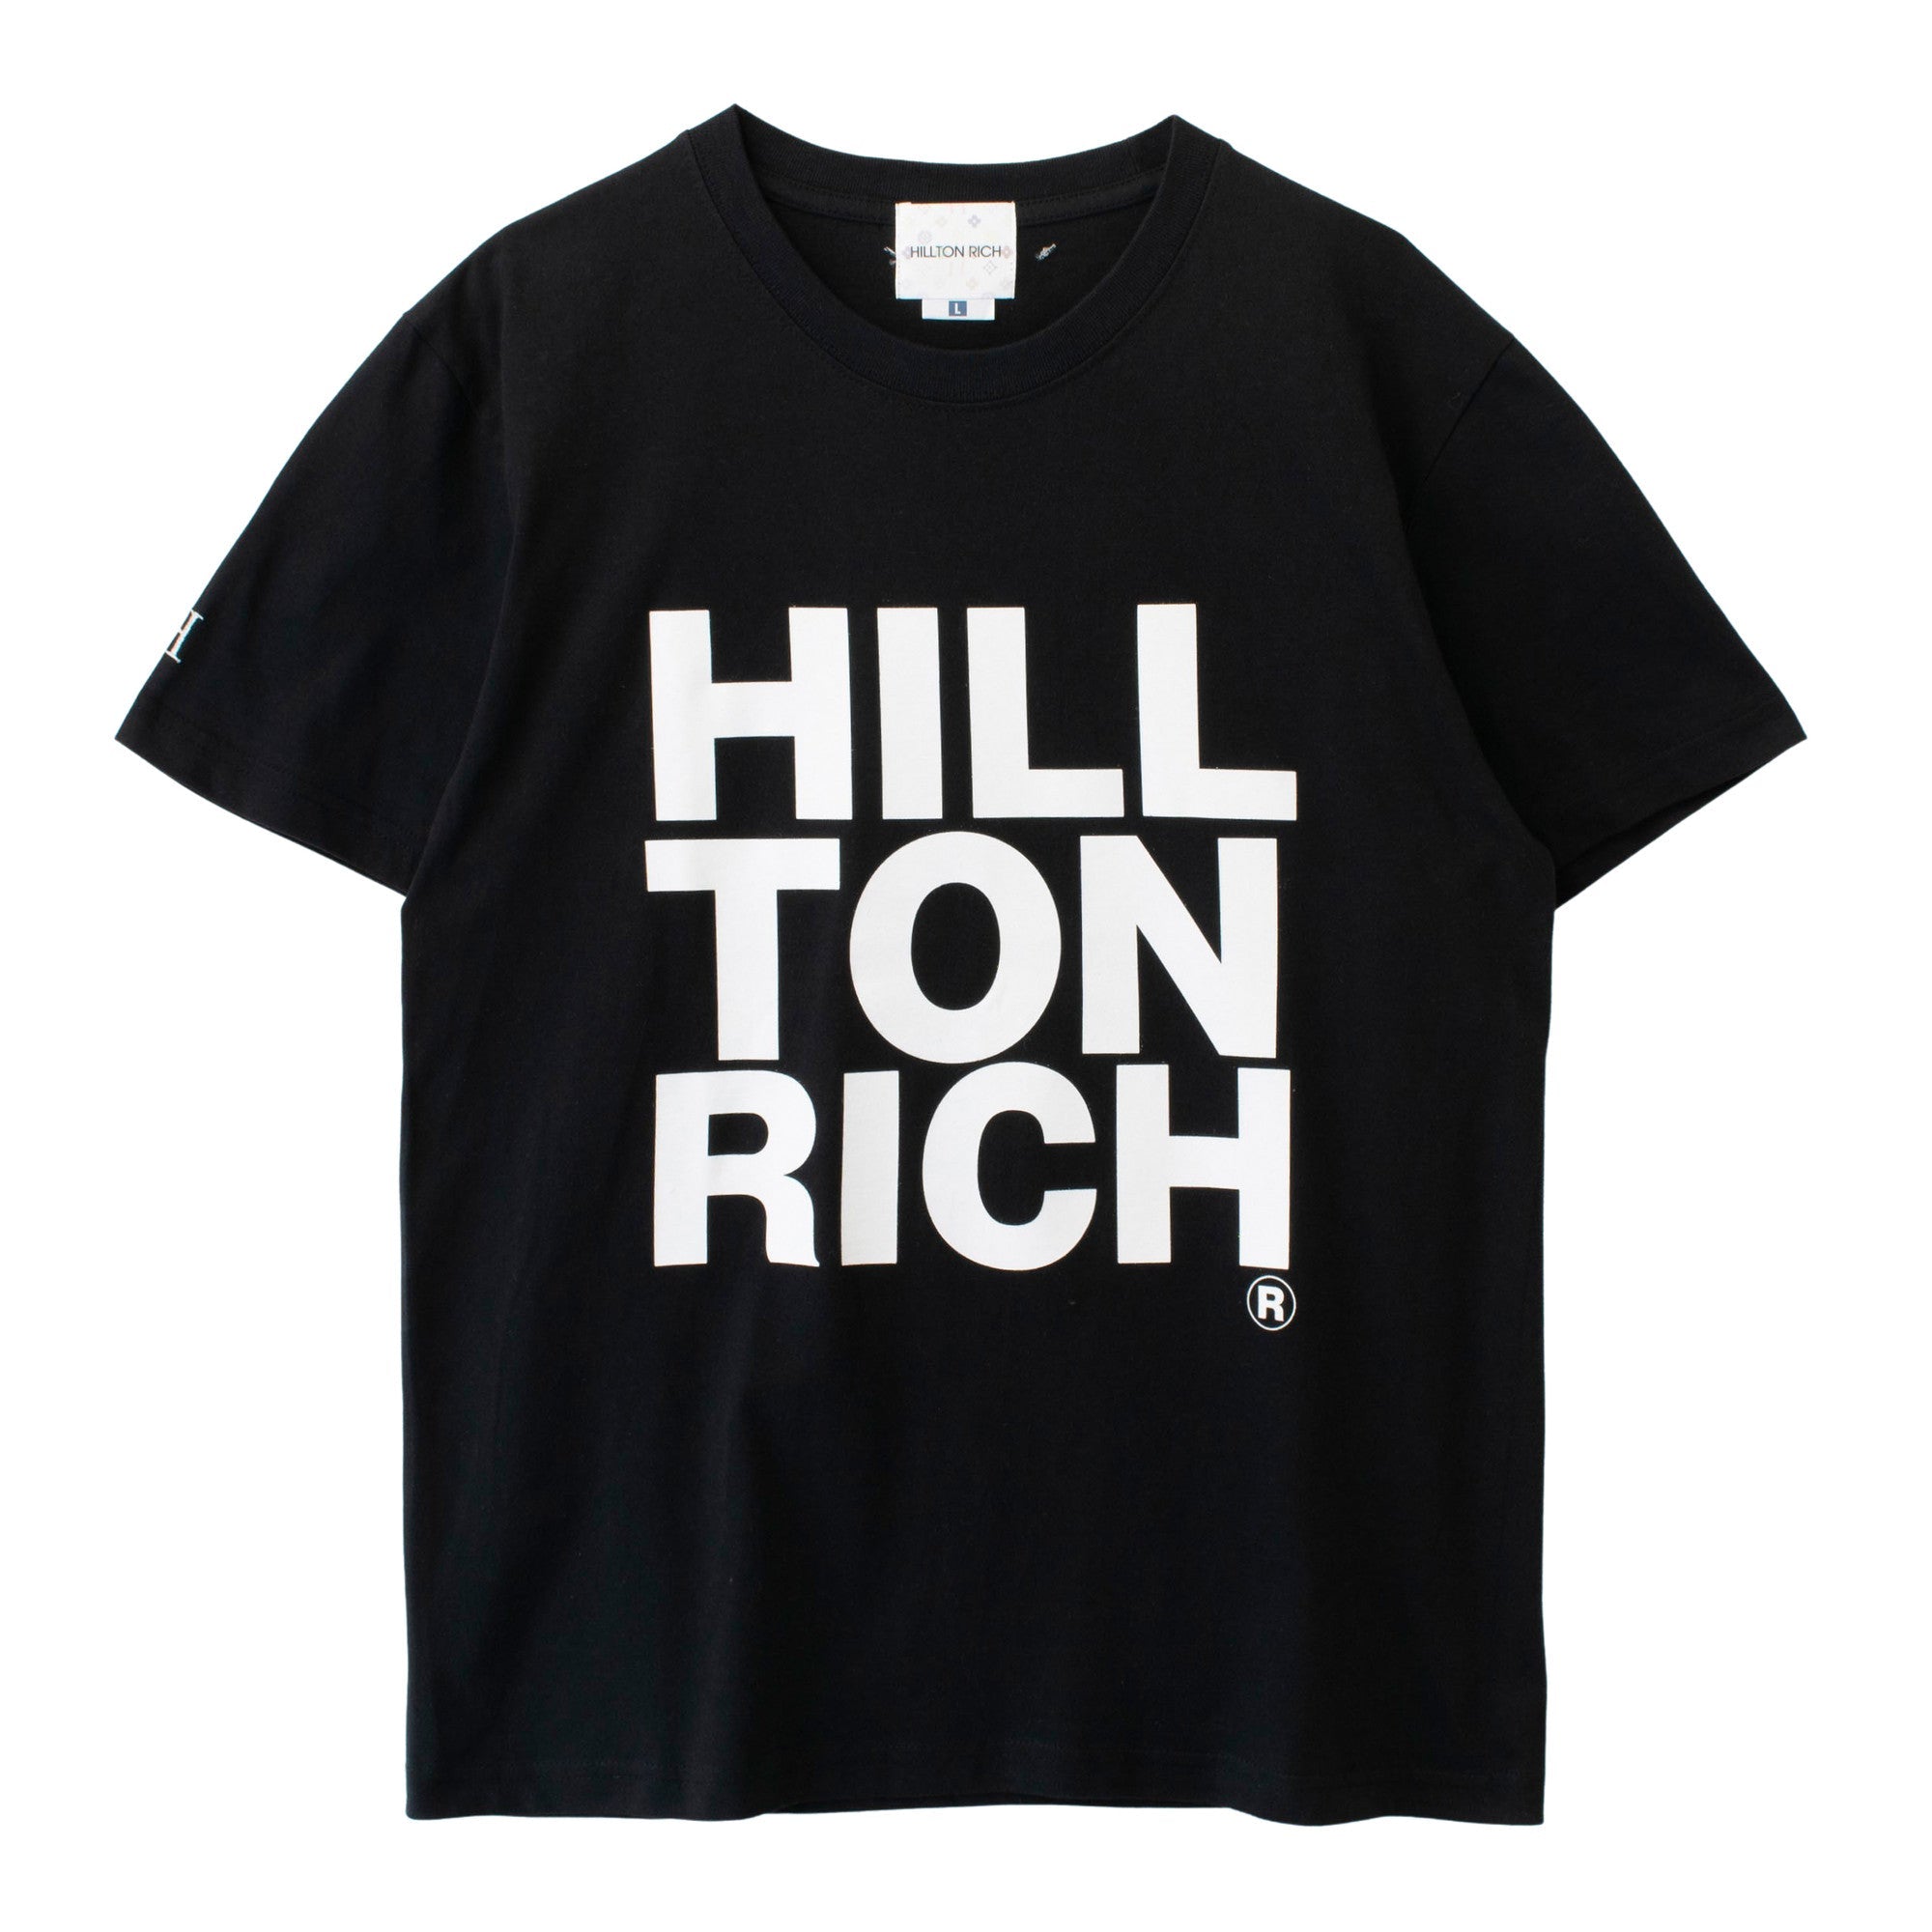 HILLTON RICH(ヒルトンリッチ）メンズ カットソー BackStitch BIG LOGO Tシャツ black ヒルトンリッチ